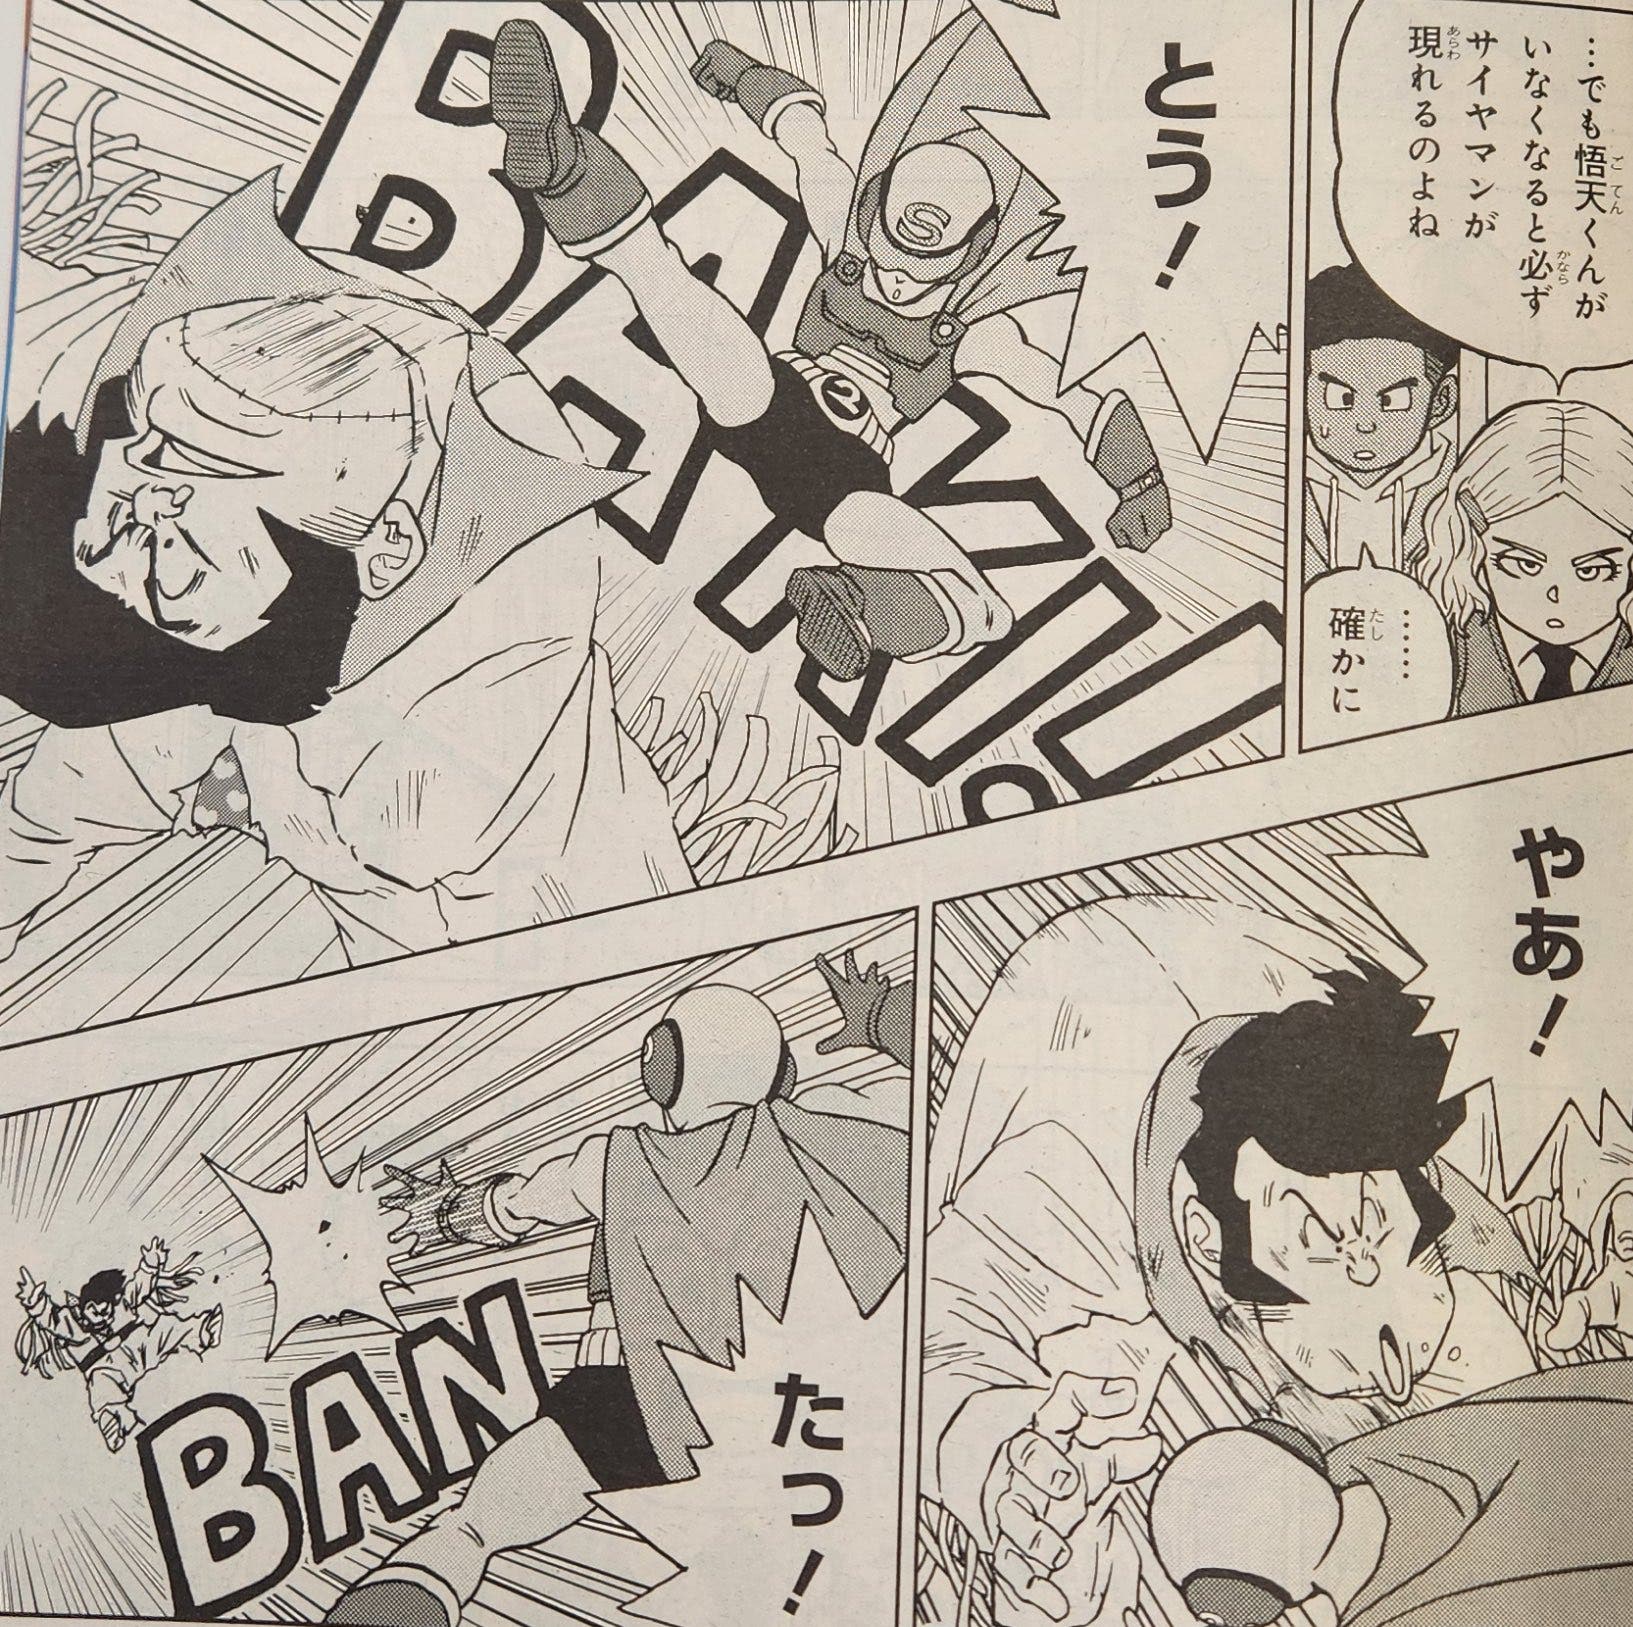 Dragon Ball Super manga 90: ya puedes leer el nuevo capítulo